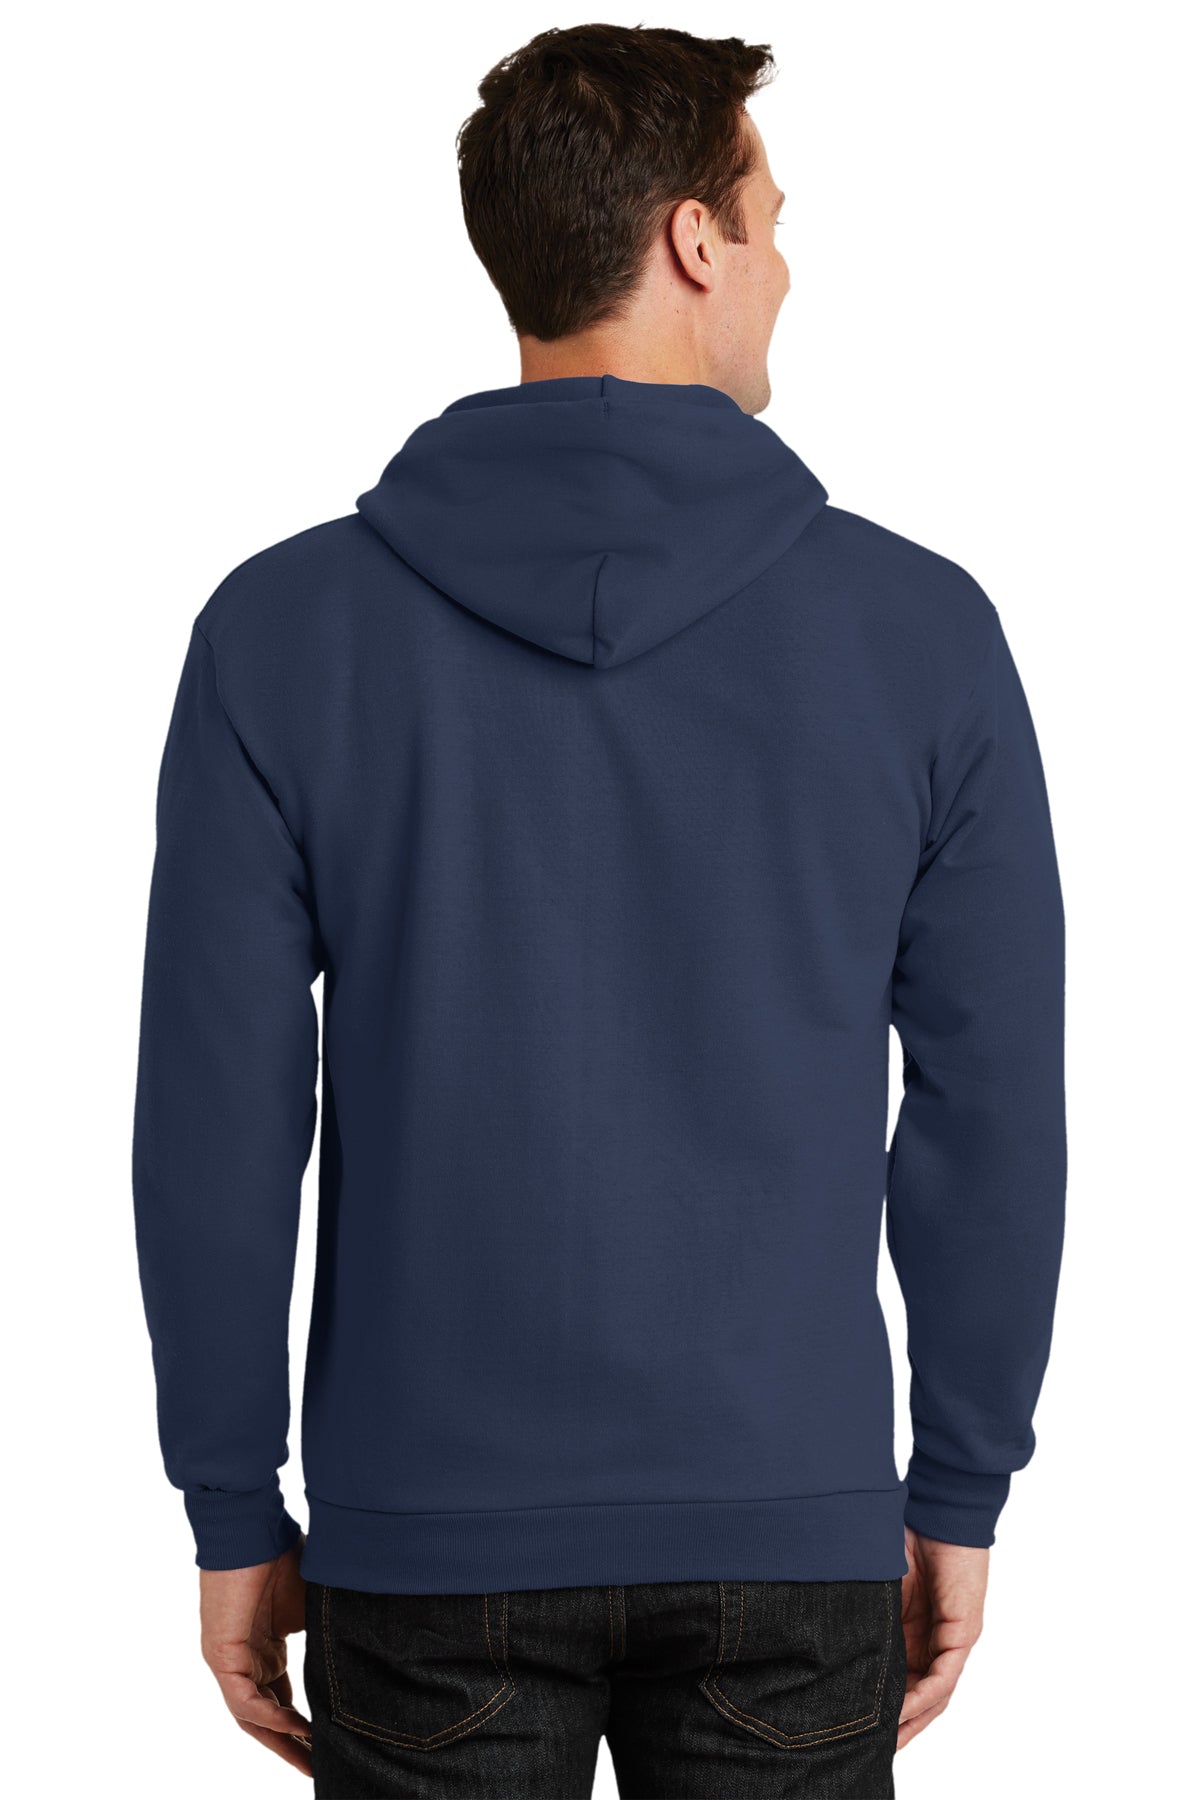 Port & Company Tall Essential Fleece Zip Branded Hoodies, Navy